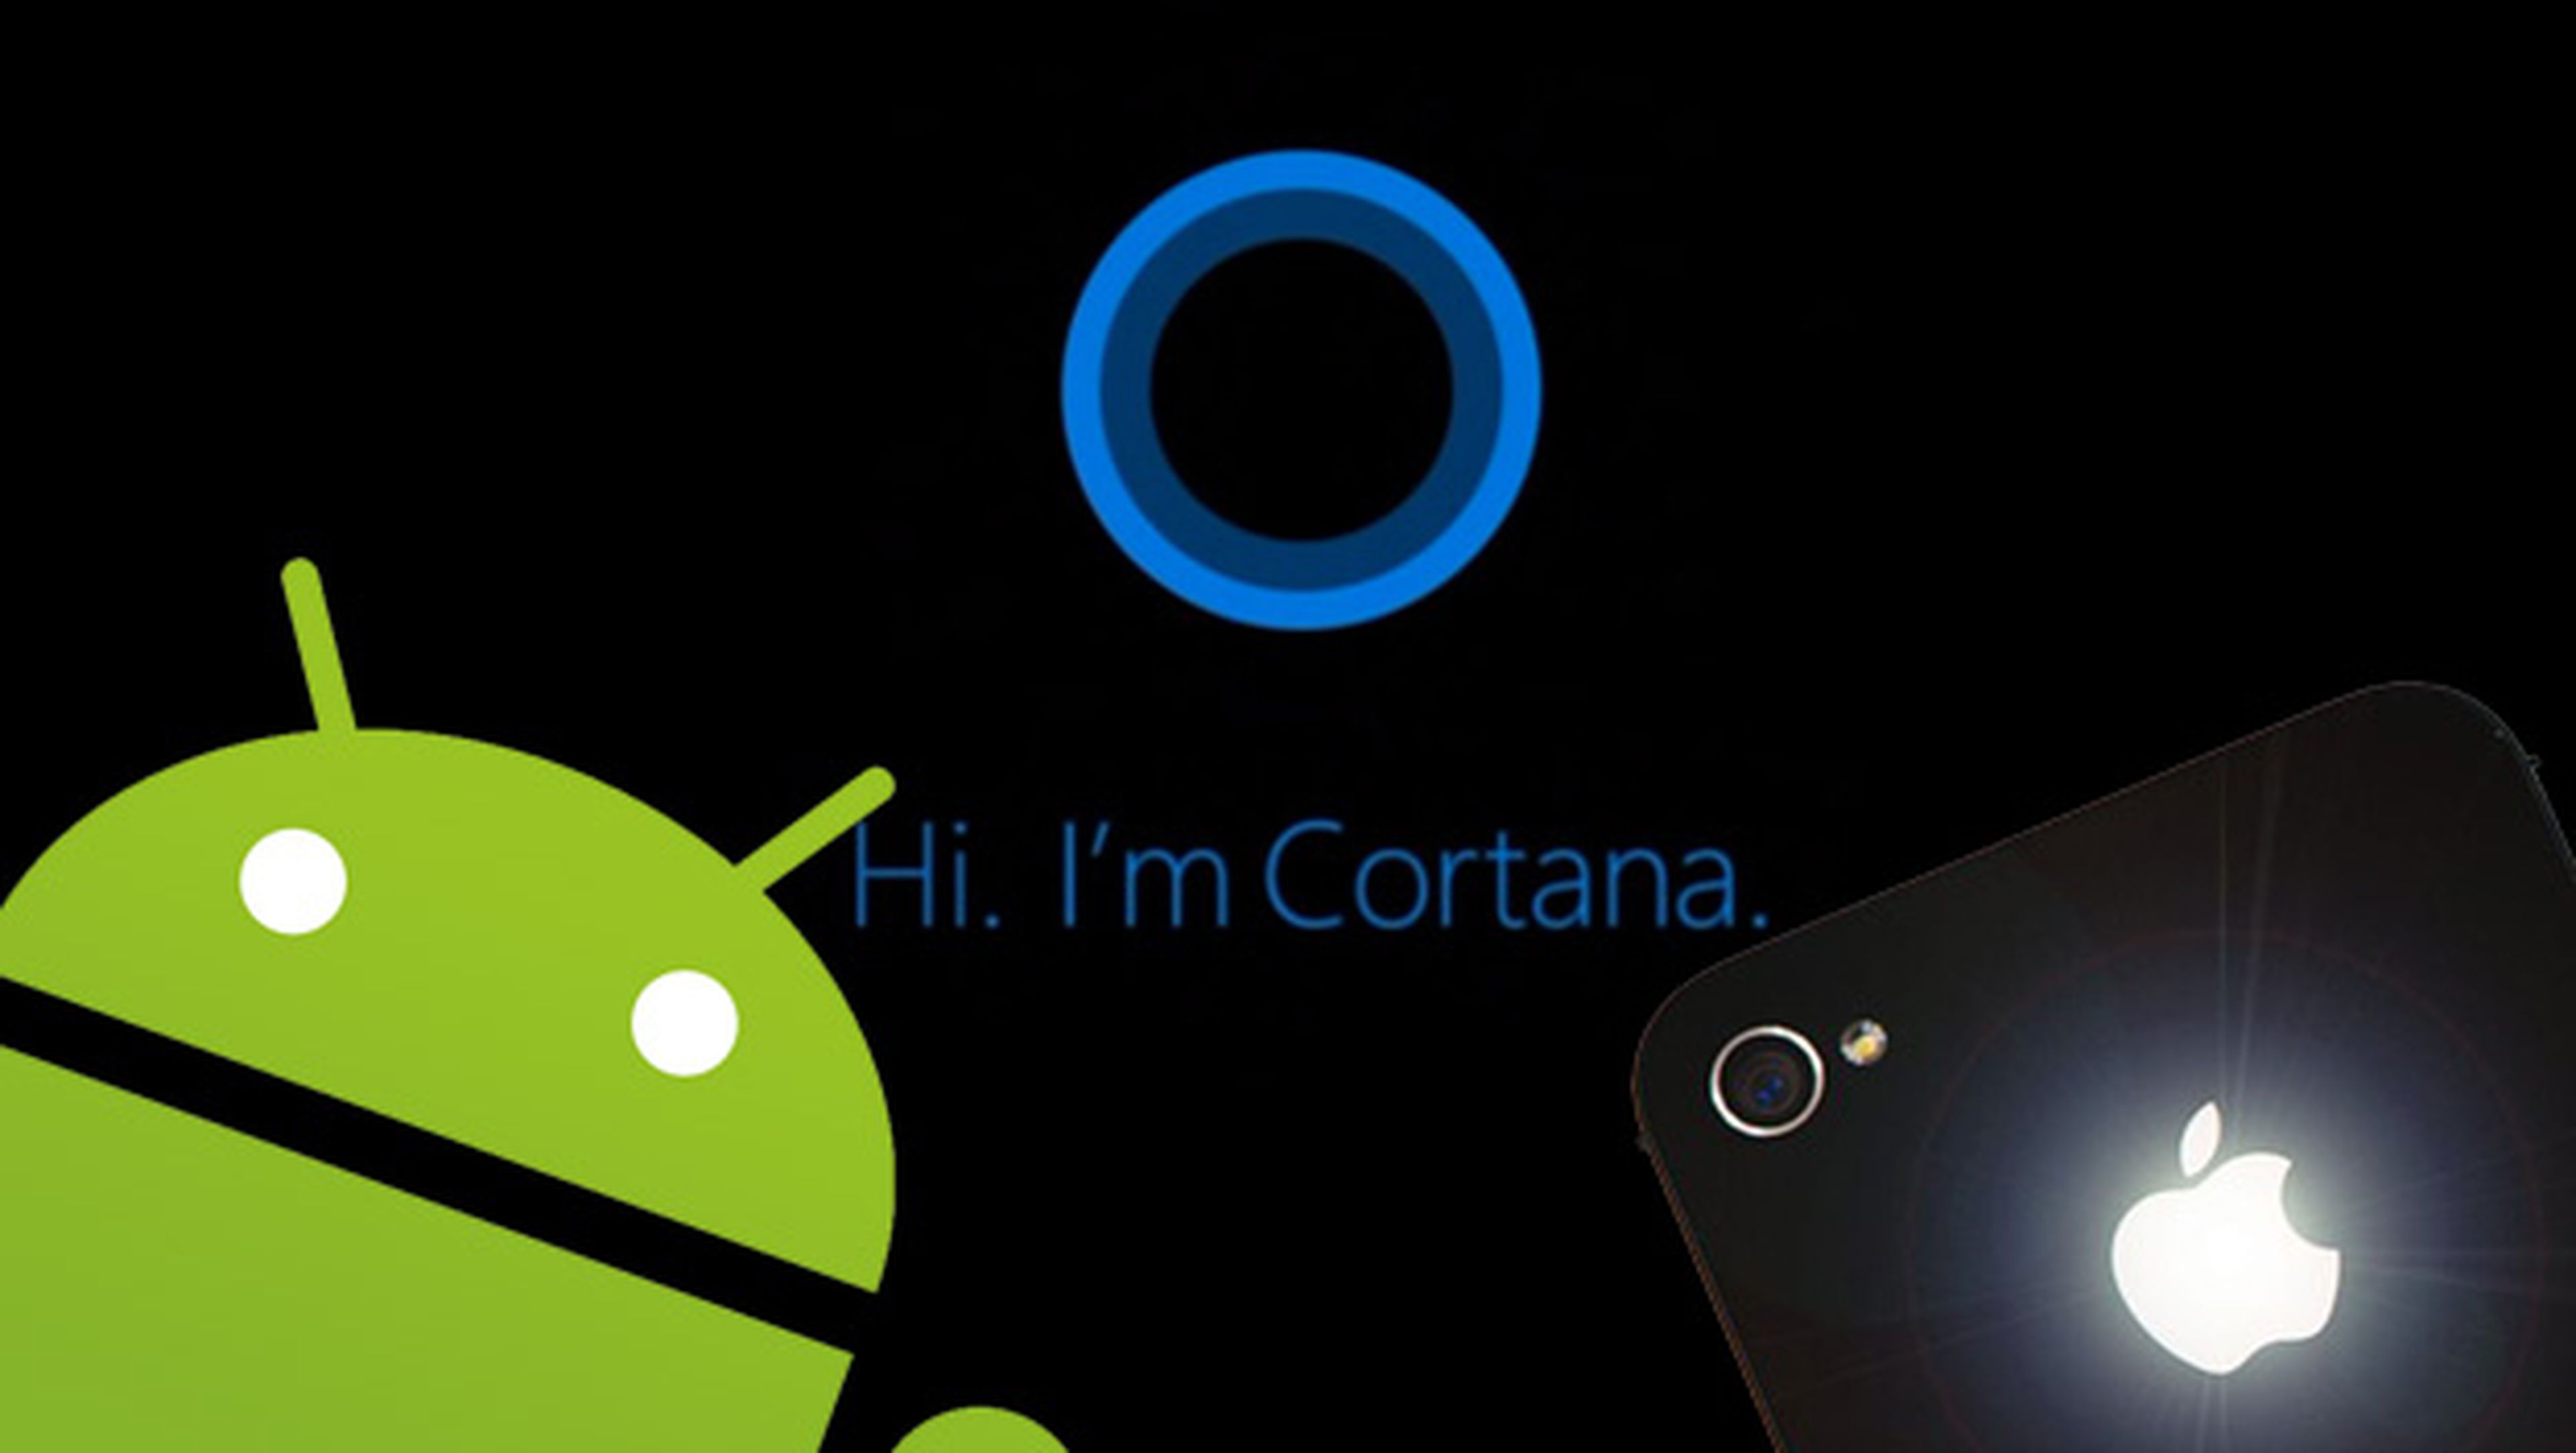 Cortana asistente de Microsoft disponible en iOS Android